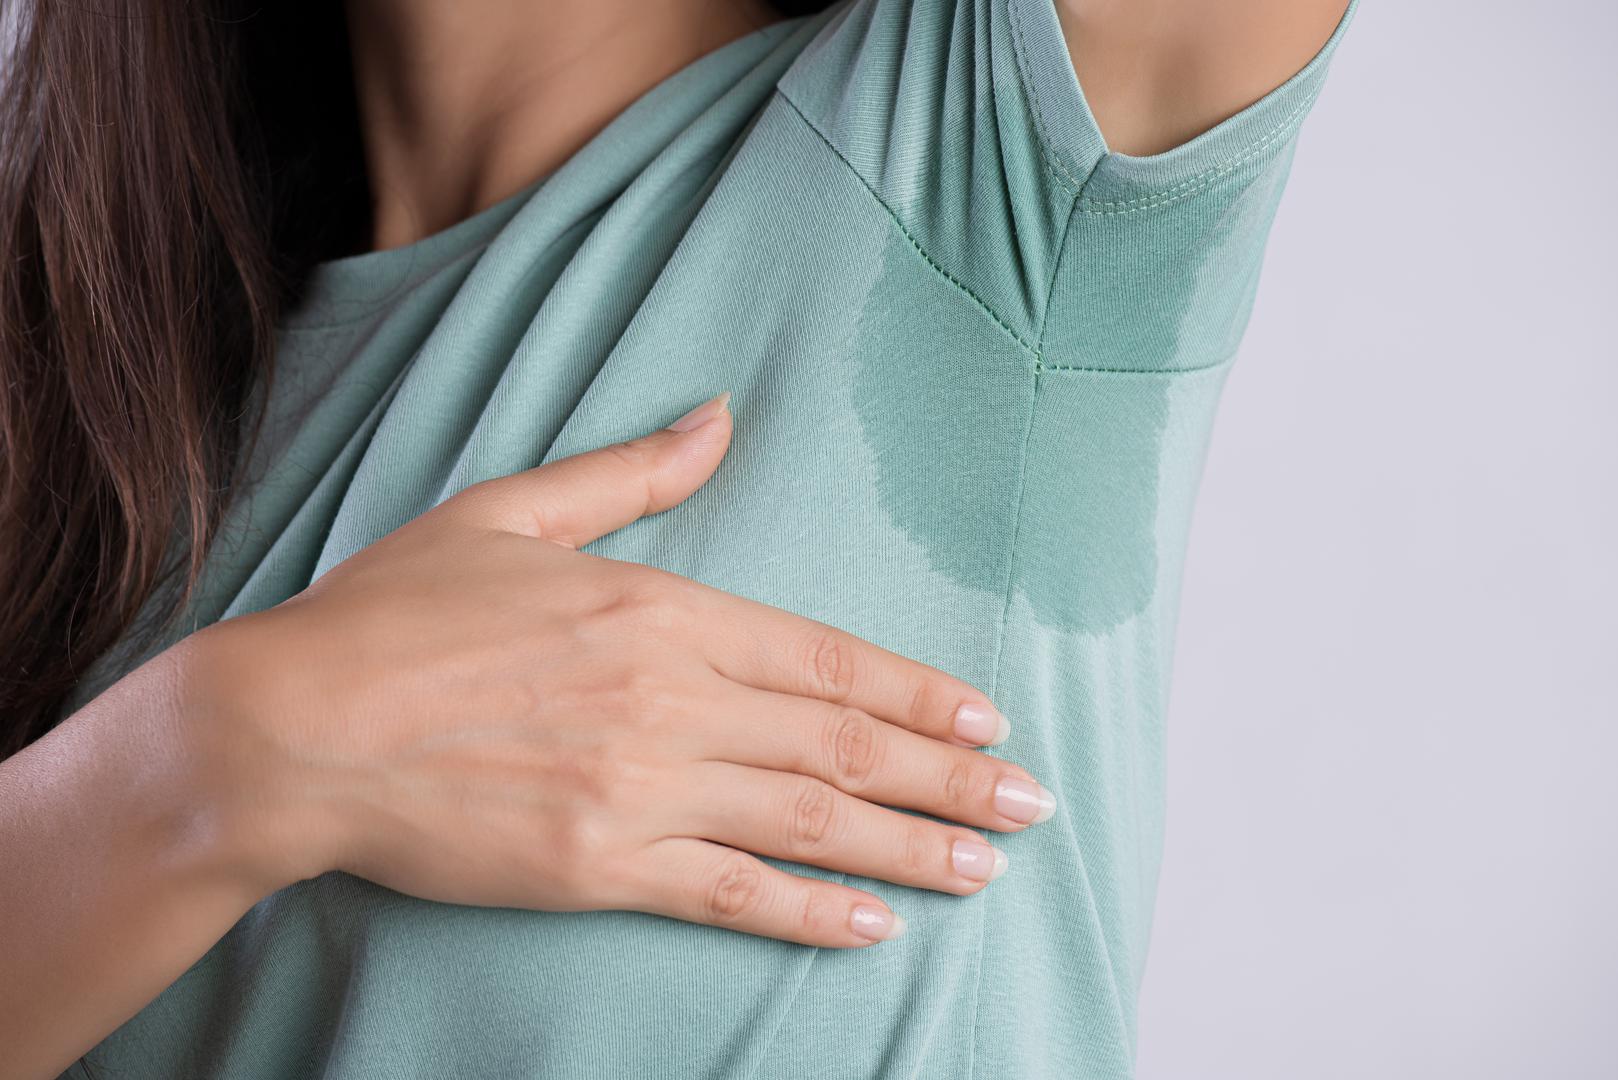 Naš znoj zapravo nema miris: Ako mislite da znoj smrdi, ne mislite dobro. Znoj sam po sebi ne smrdi. To je interakcija s bakterijama na našoj koži koja uzrokuje tjelesni miris. Ne brinite, ovo je sasvim normalno. Ove bakterije se javljaju prirodno i jednostavno uspijevaju u 'najznojnijim' dijelovima našeg tijela.